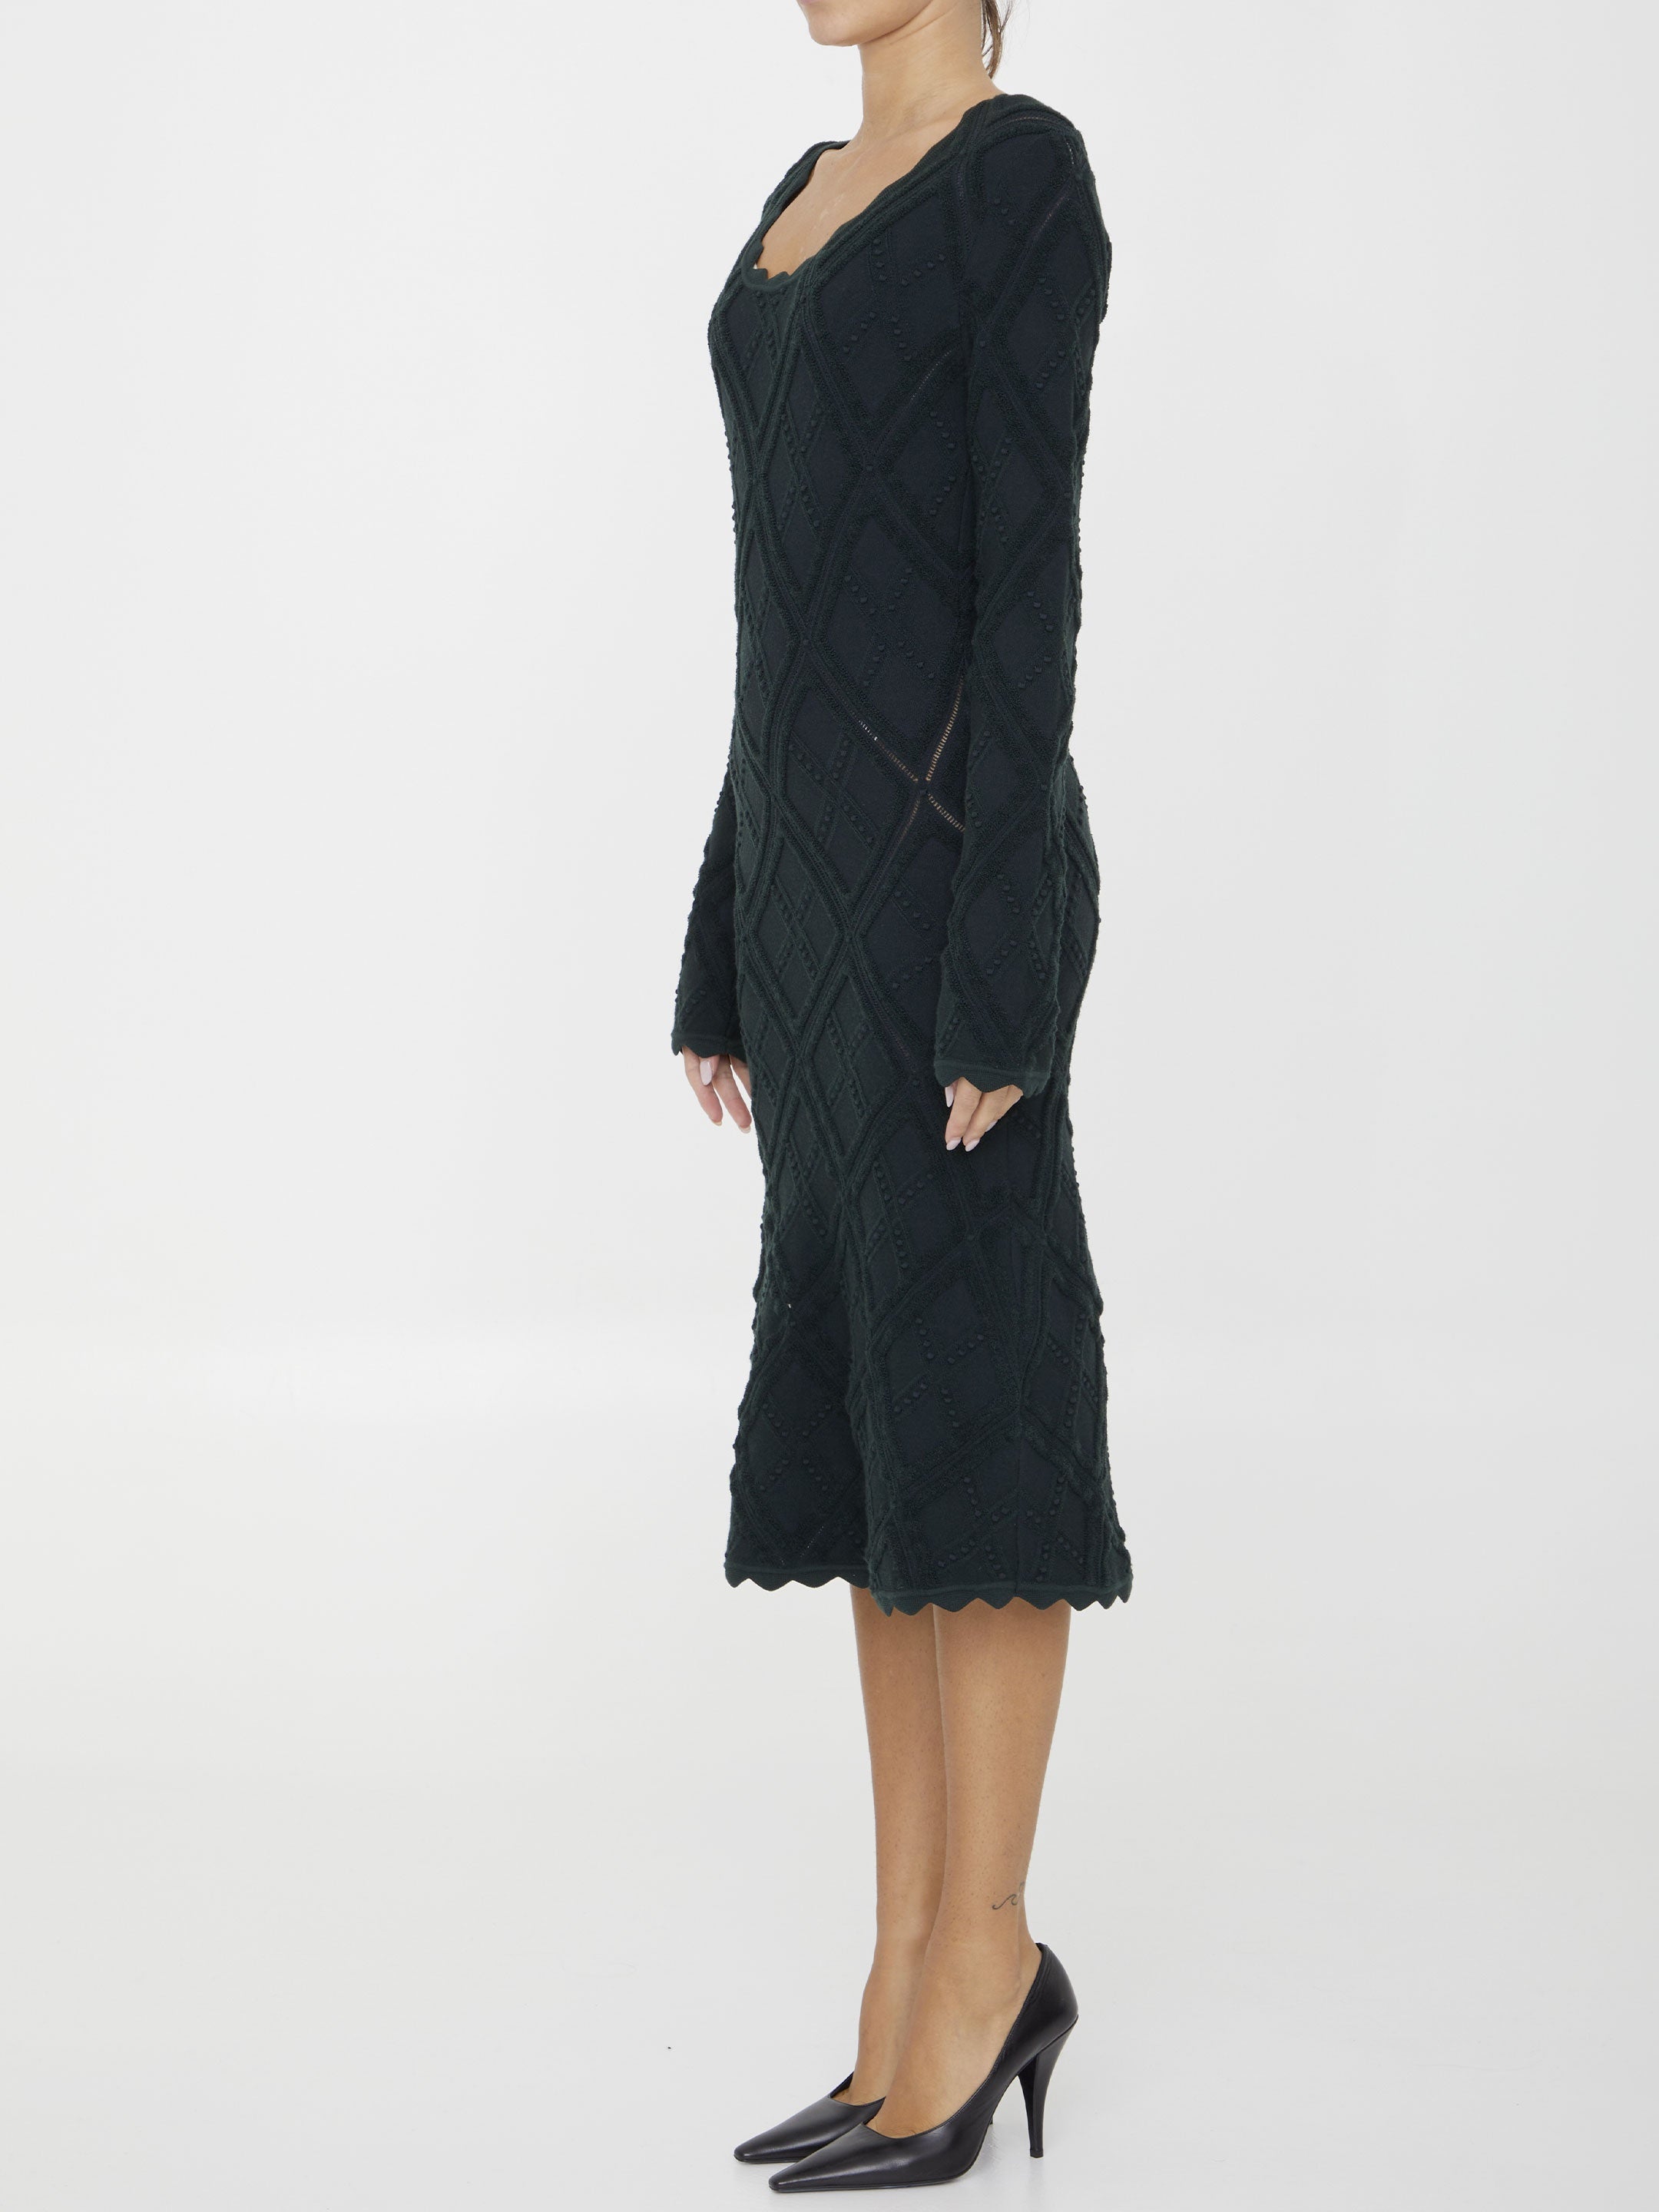 Aran knit dress